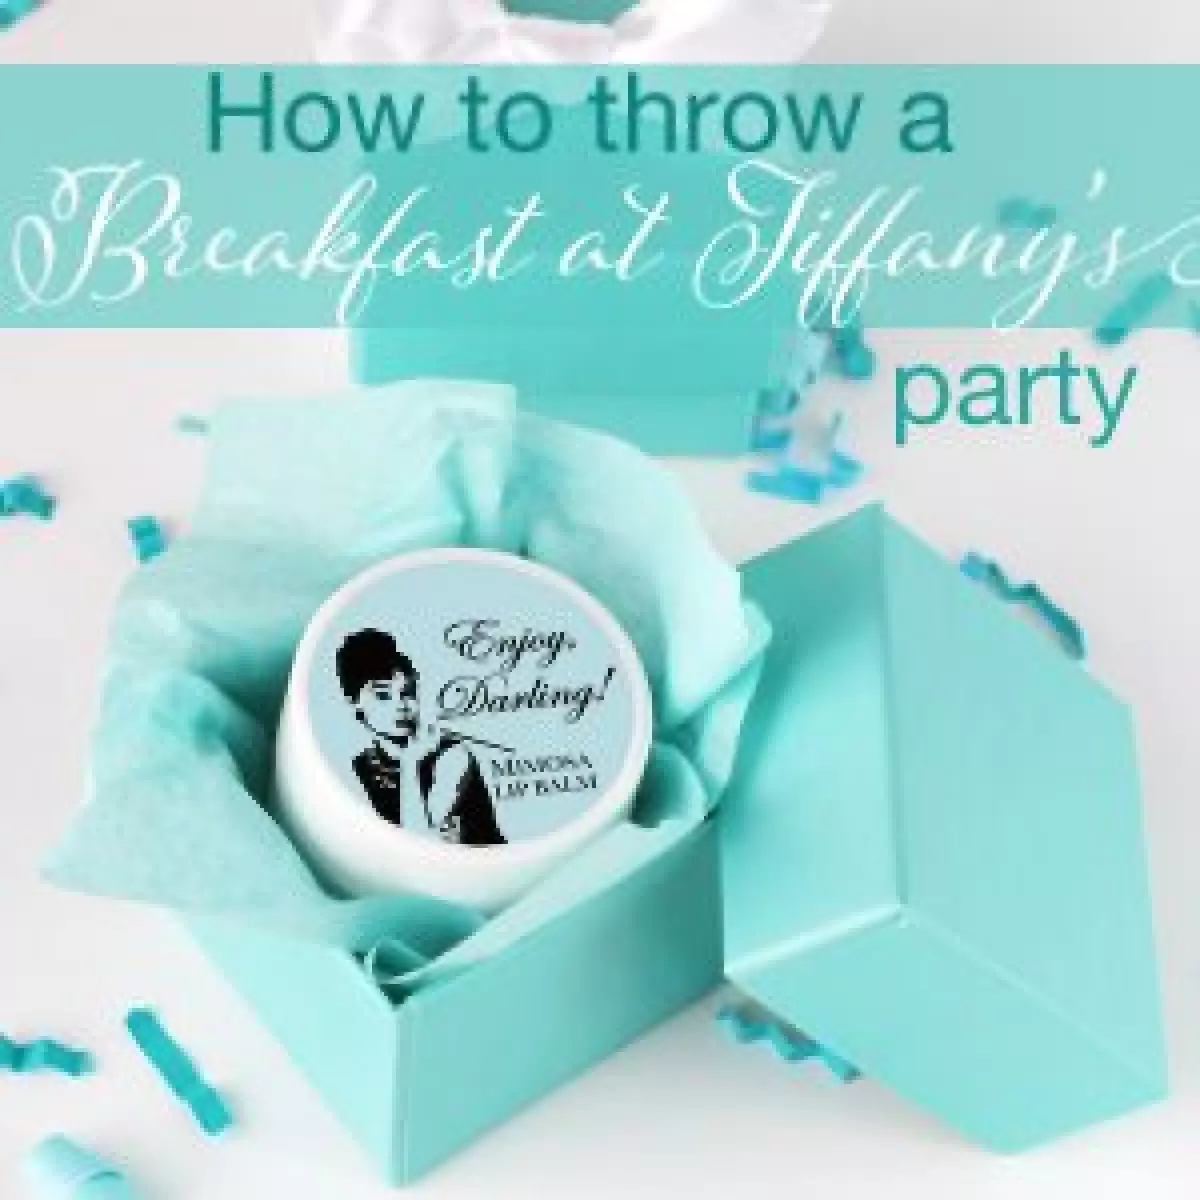 Breakfast at Tiffany's Party